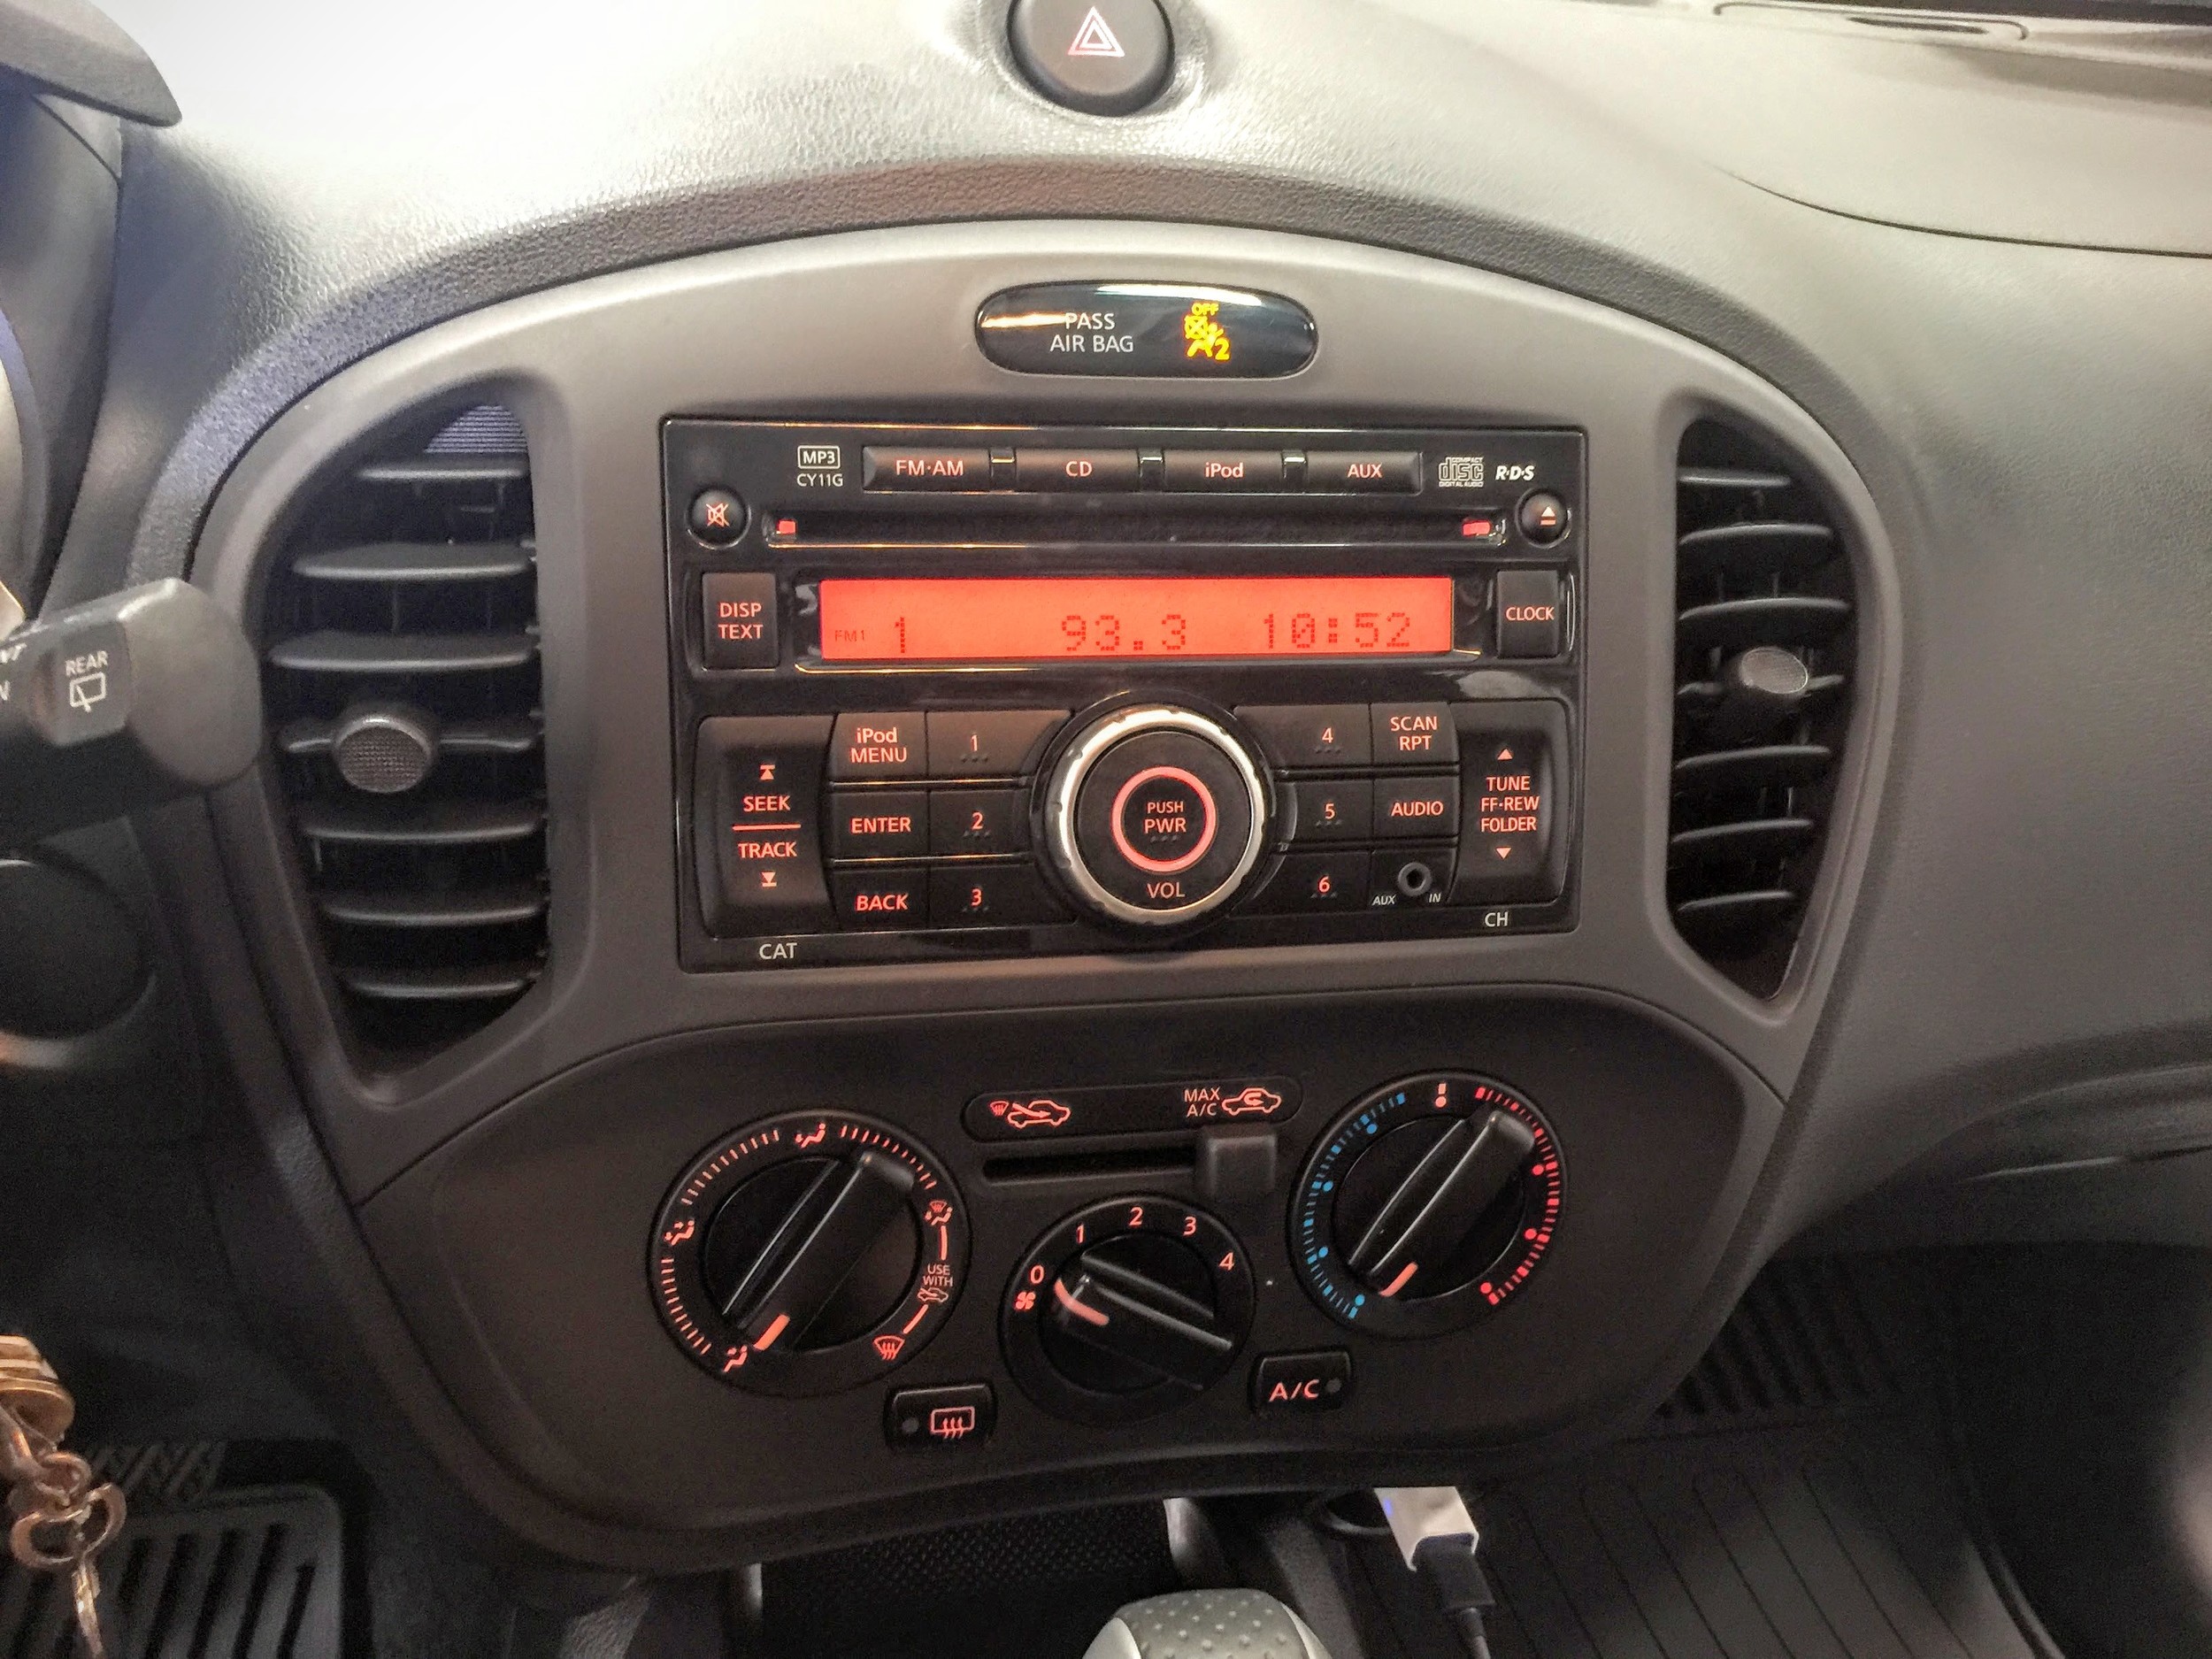 2013 Nissan Juke Radio Install — Twelve Volt Technologies